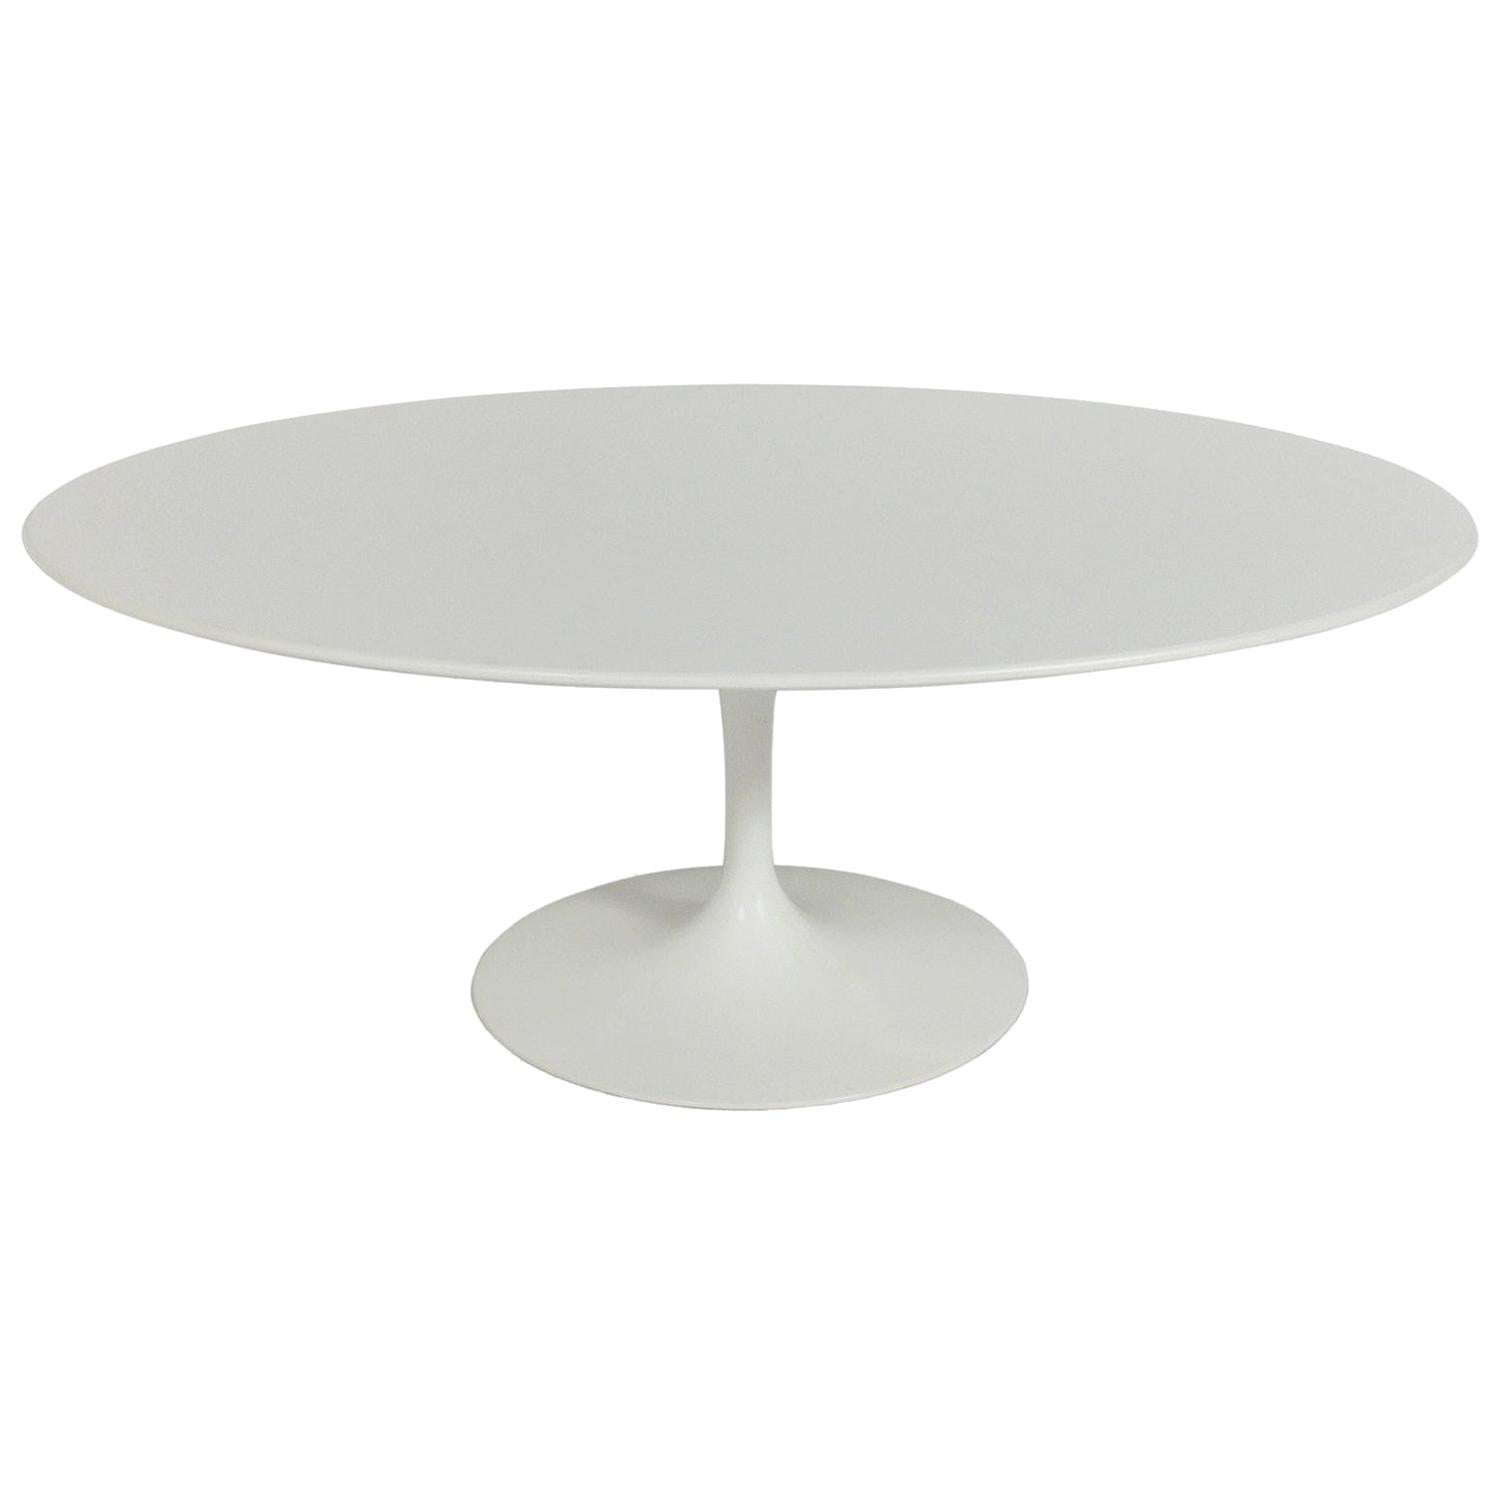 Oval Tulip Coffee Table by Eero Saarinen for Knoll